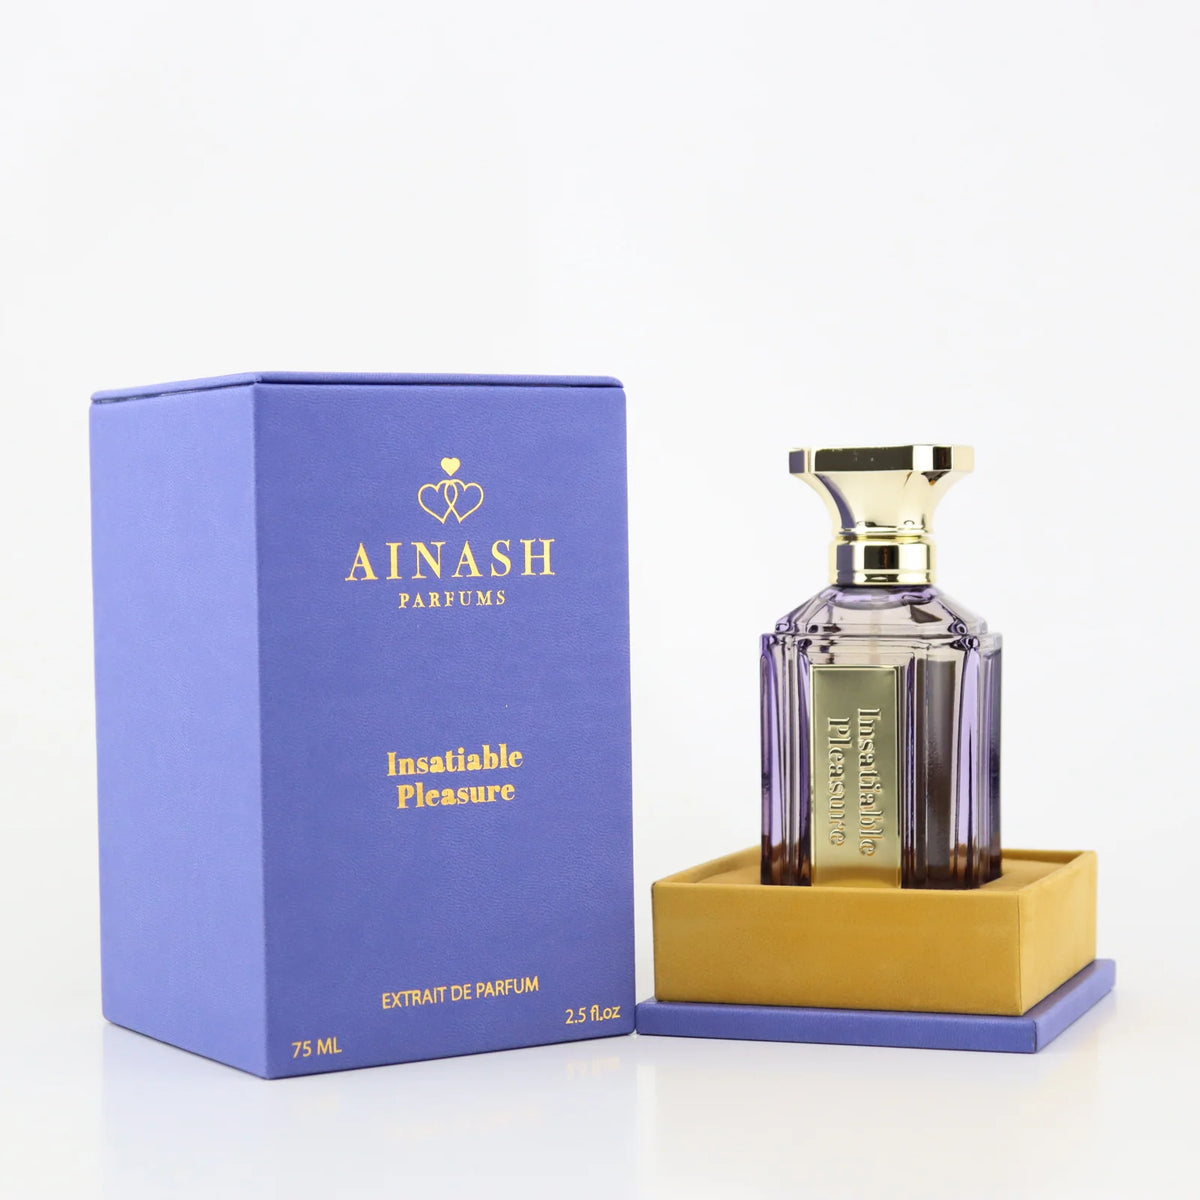 Insatiable Pleasure by Ainash Parfums